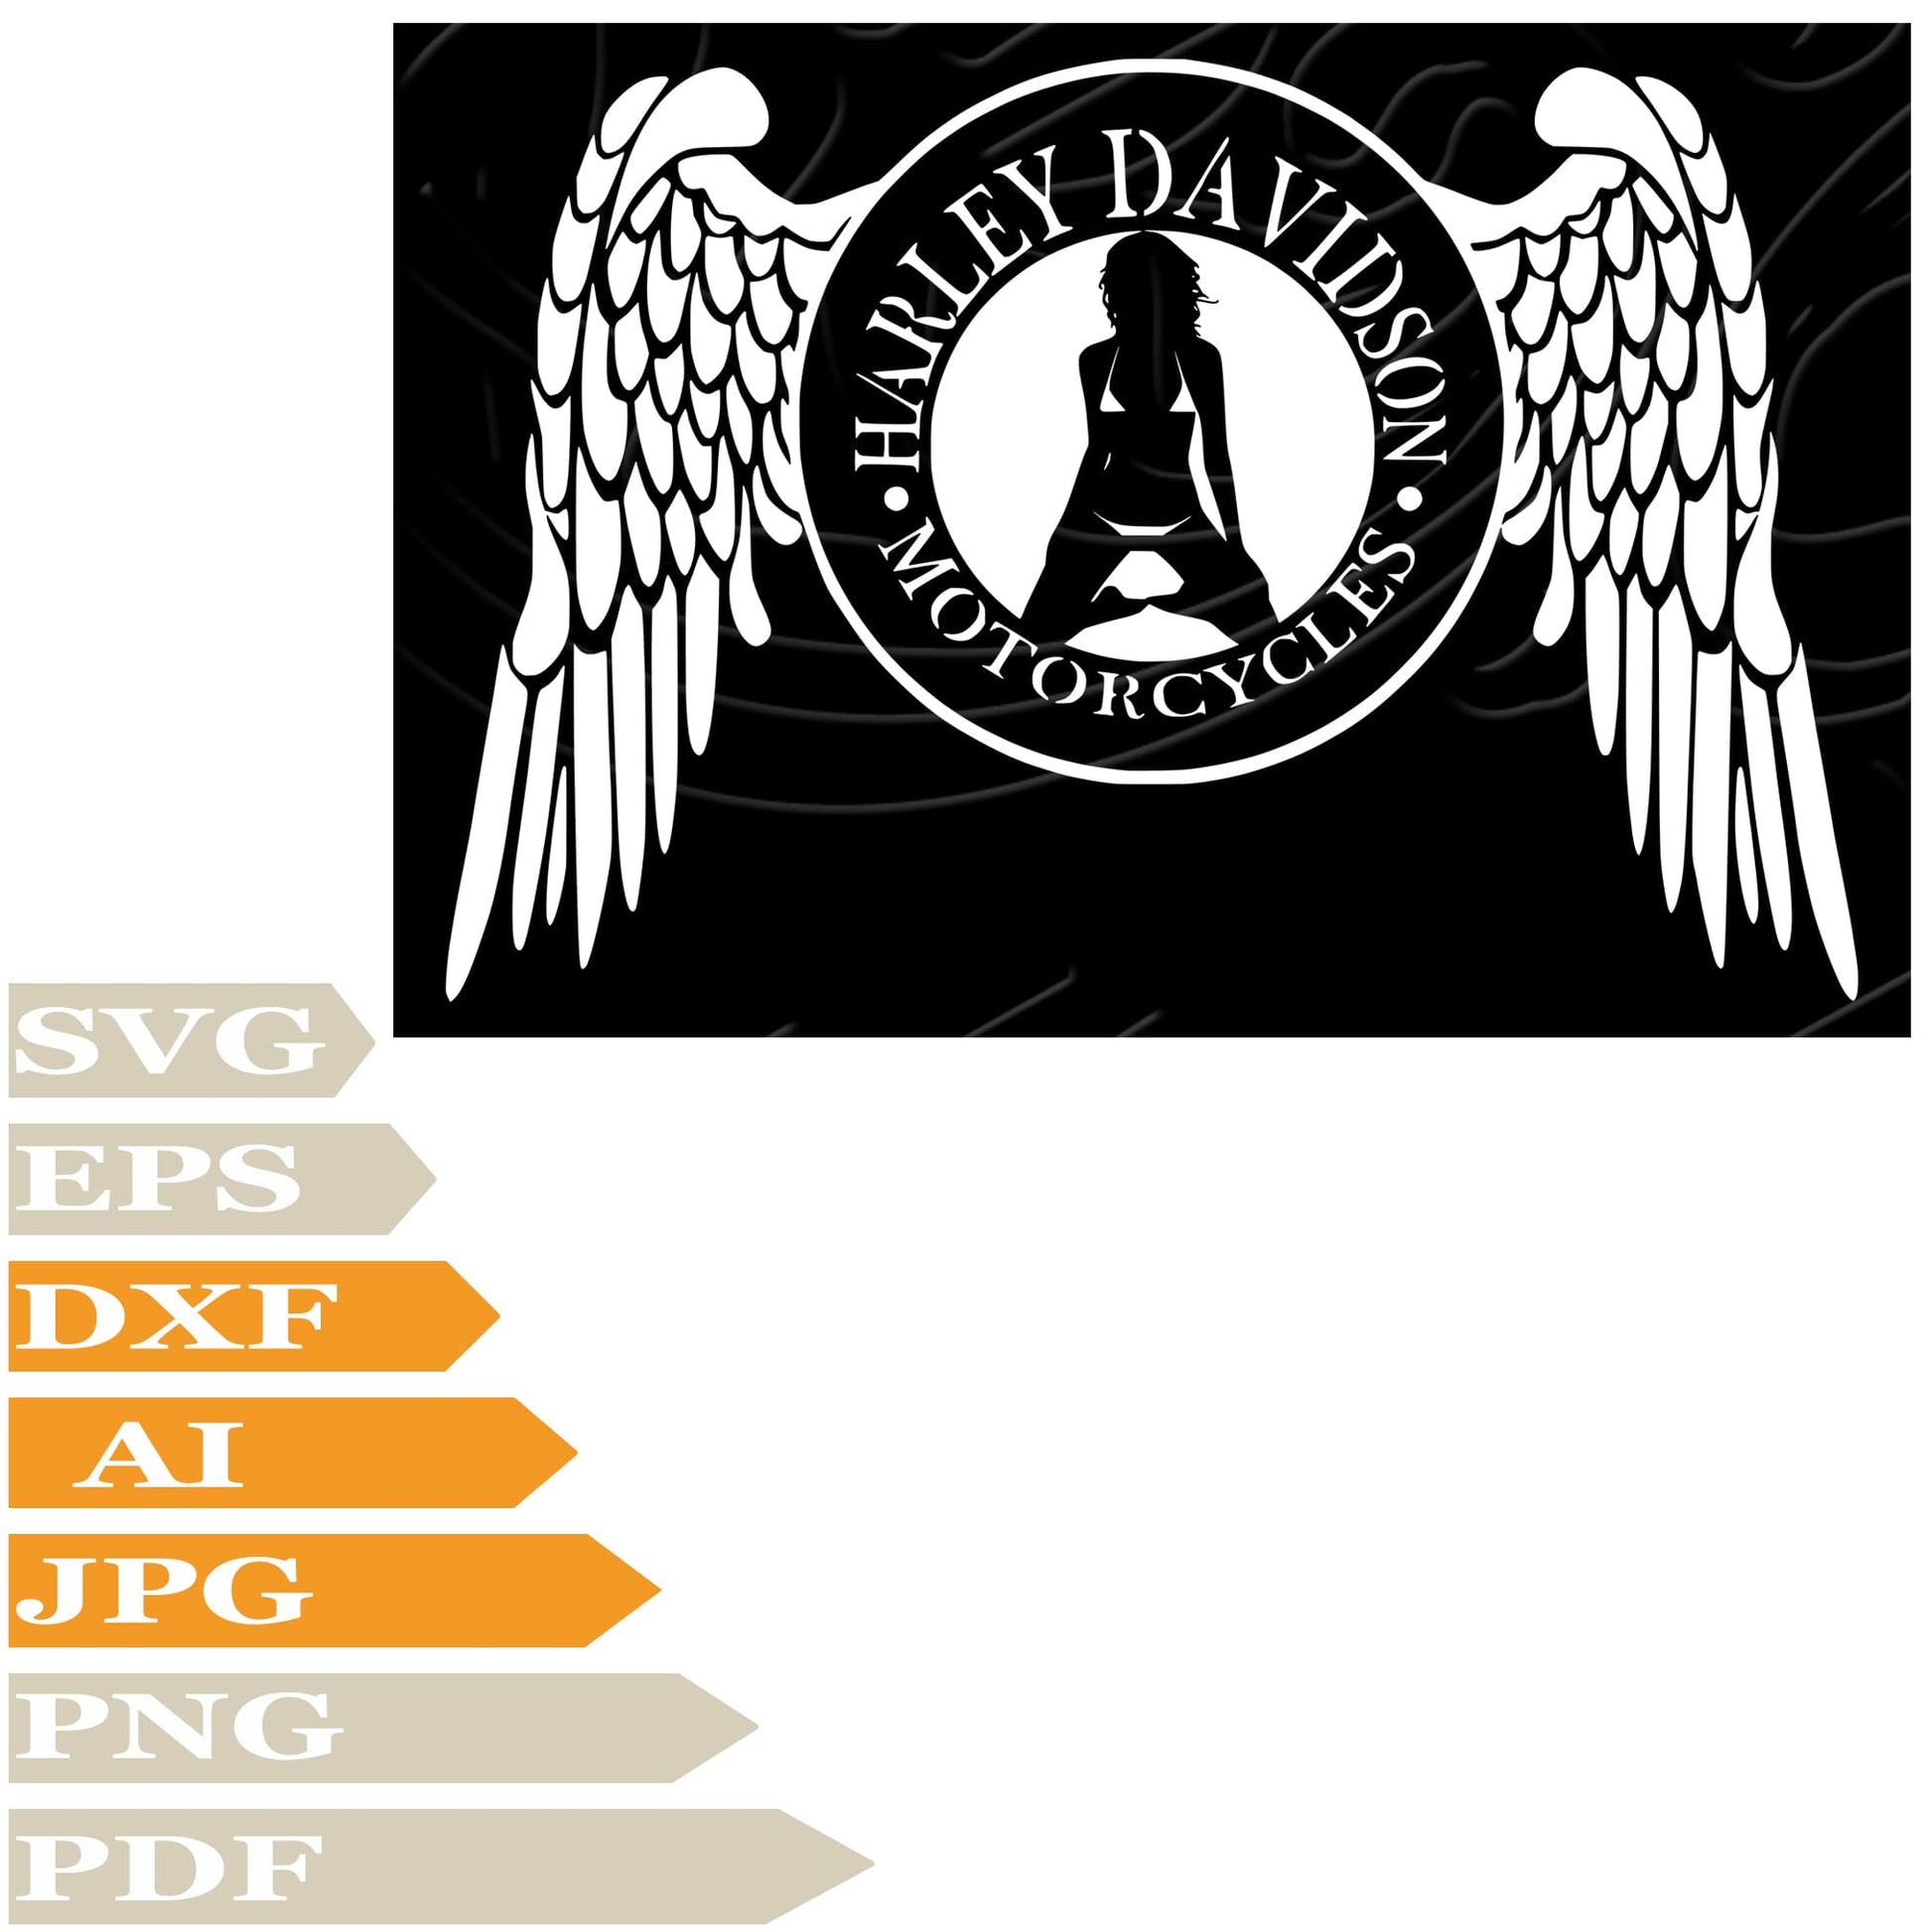 Girl SVG, Girl Harley Davidson SVG Design, Harley Davidson Logo PNG, Harley Vector Graphics, Harley Davidson Logo For Cricut, Digital Instant Download, Clip Art, Cut File, T-Shirts, Silhouette